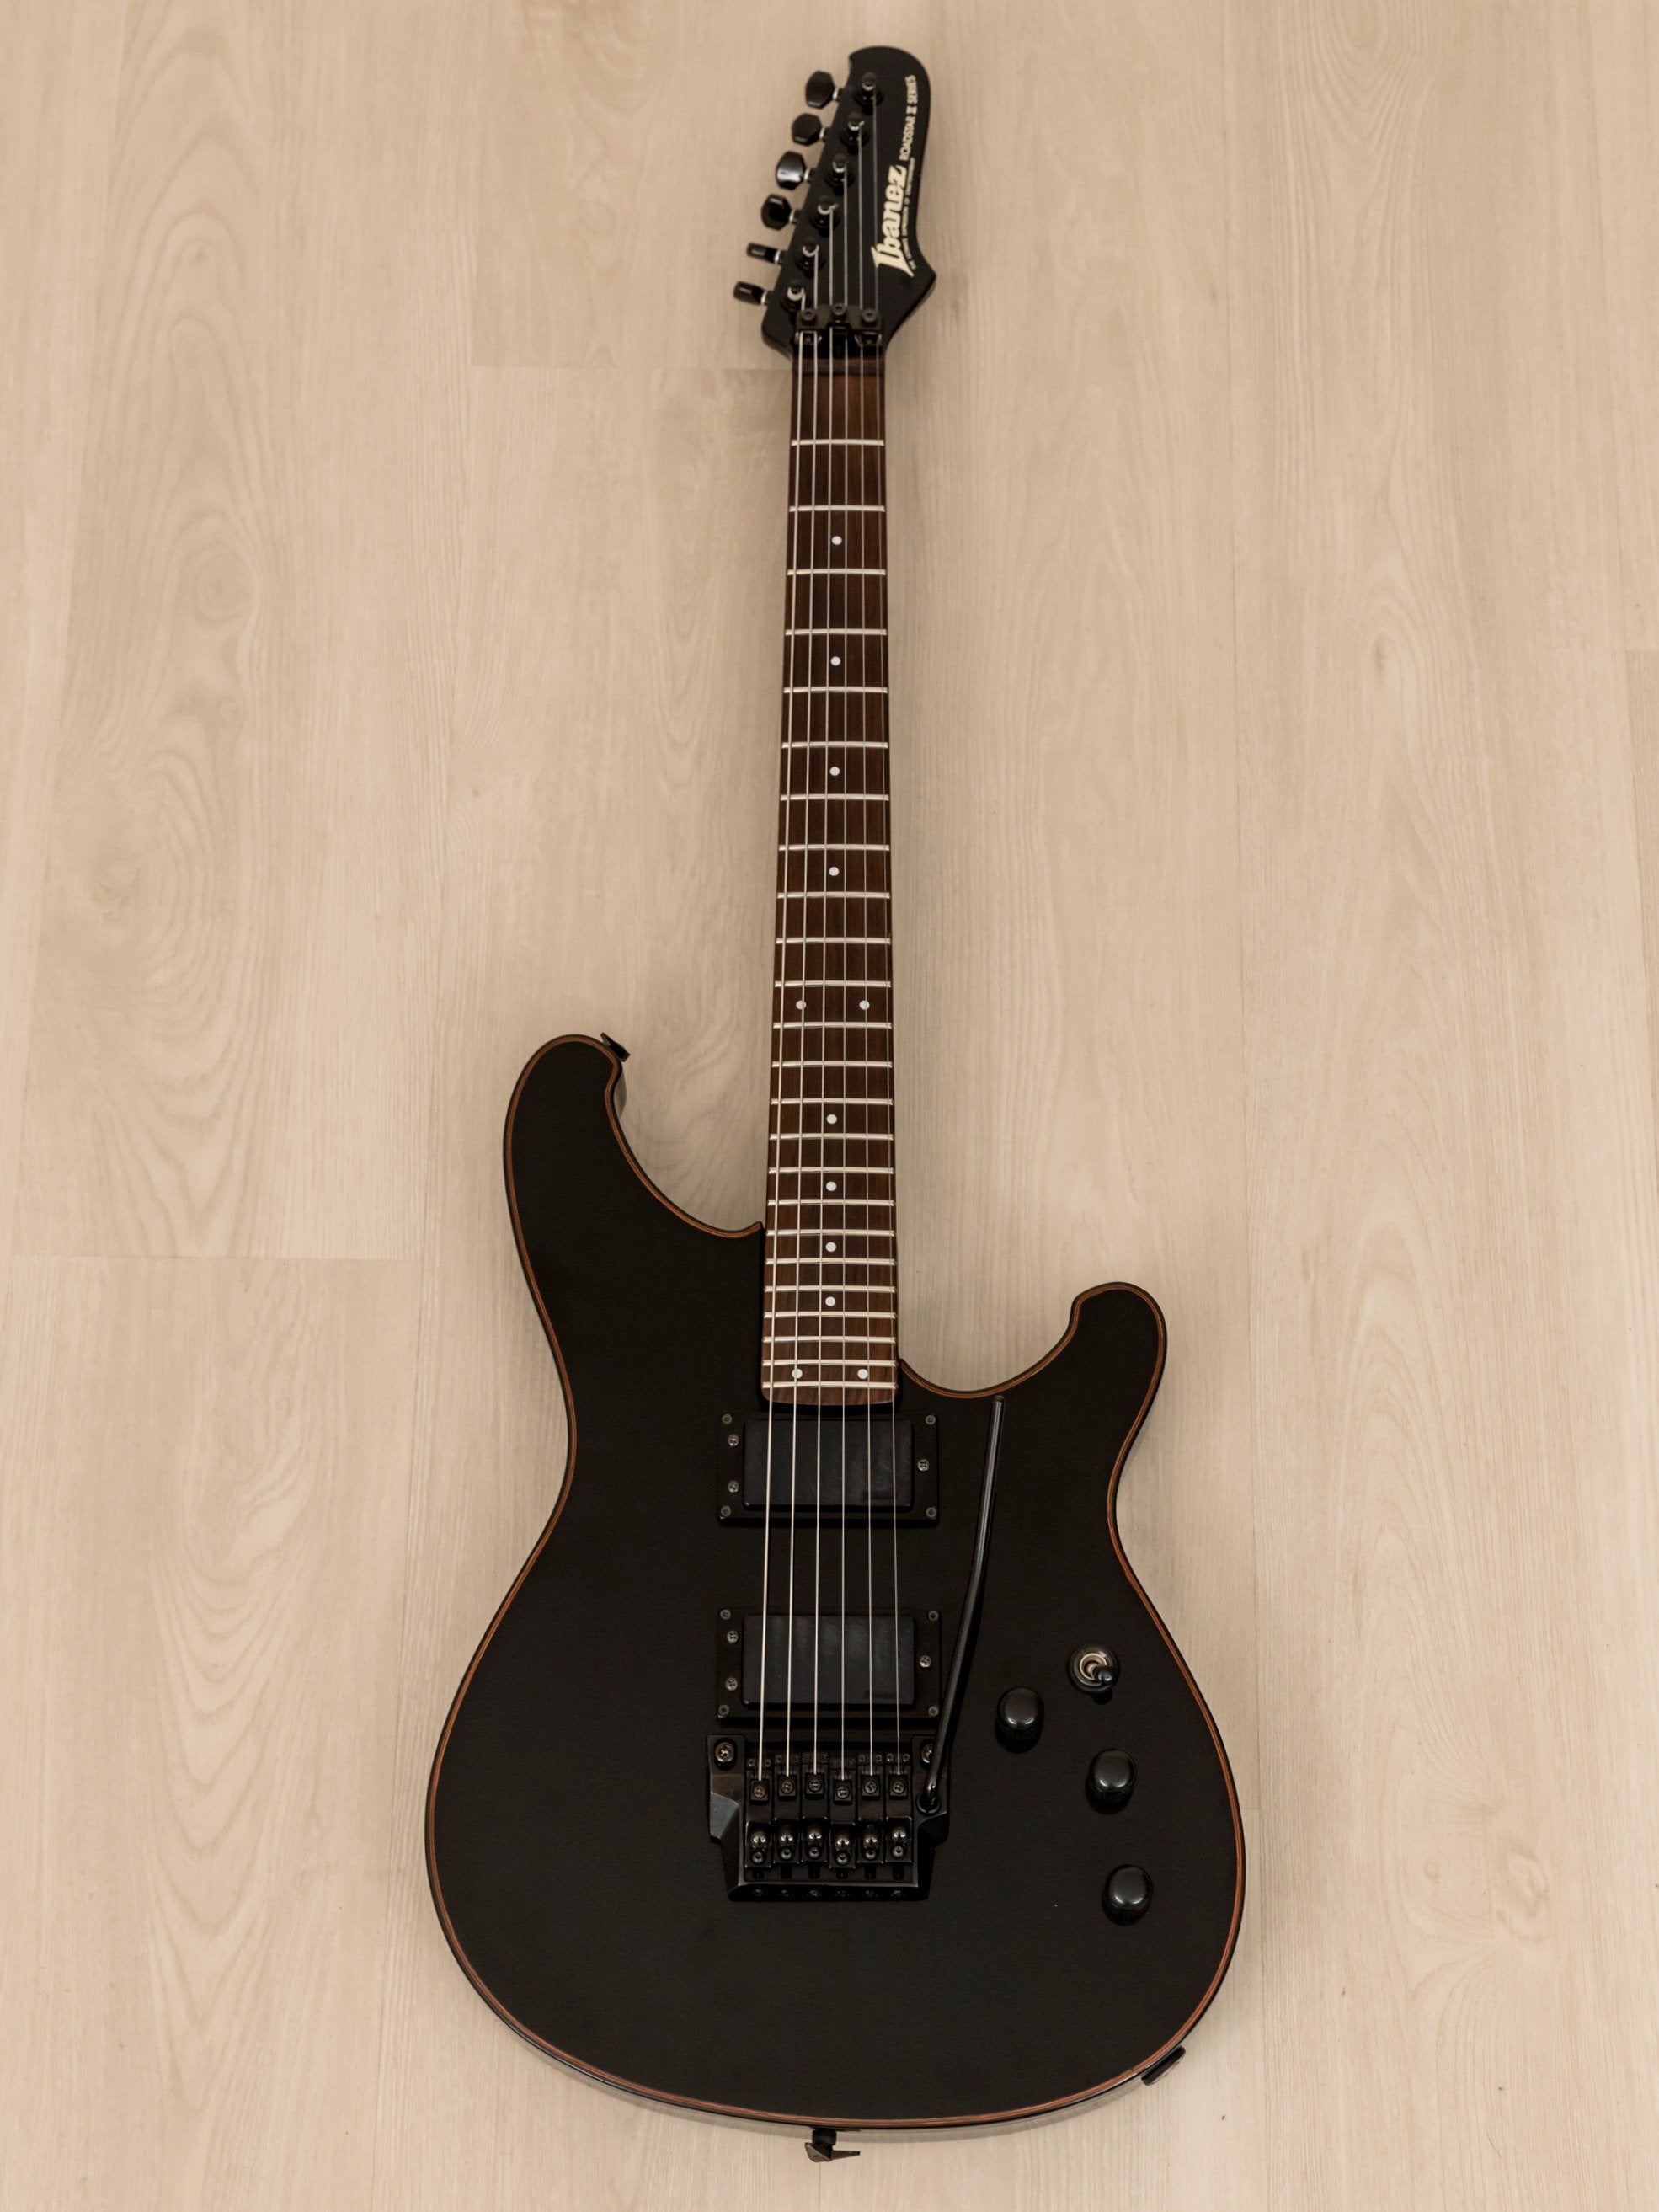 1984 Ibanez Roadstar II RS530 Vintage Guitar HH Black, Japan